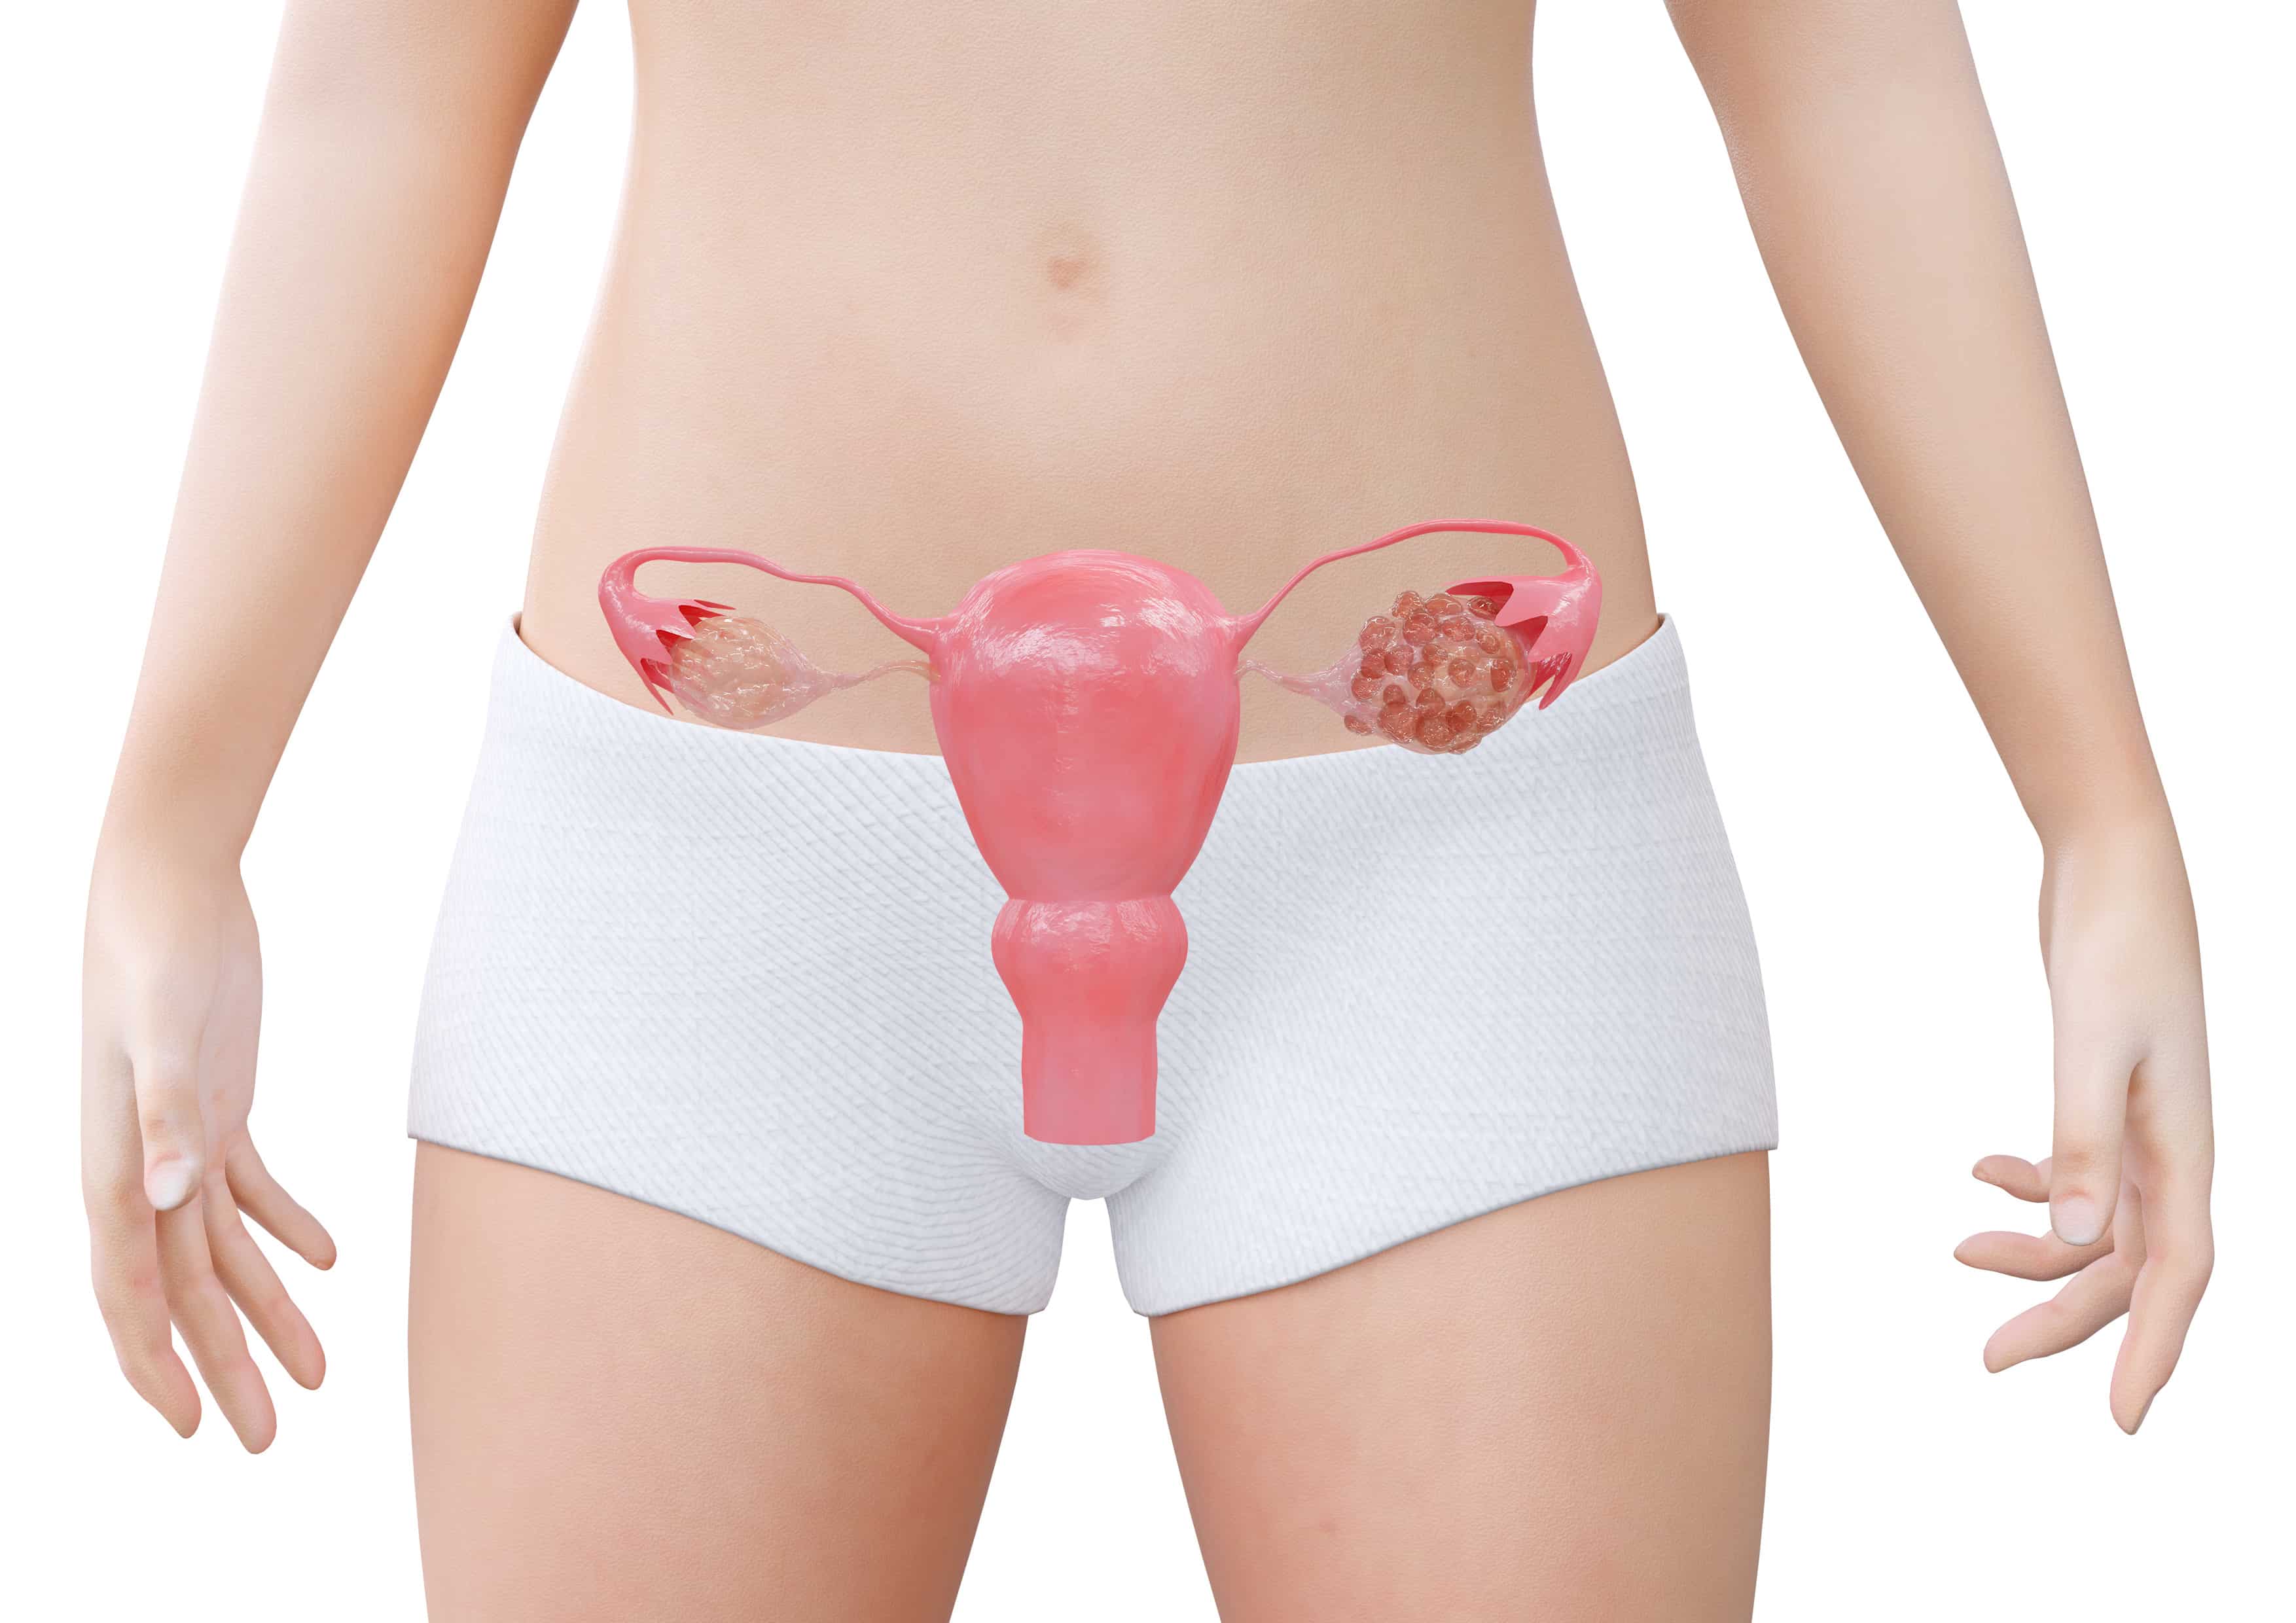 Menstruação desregulada: o que pode ser?